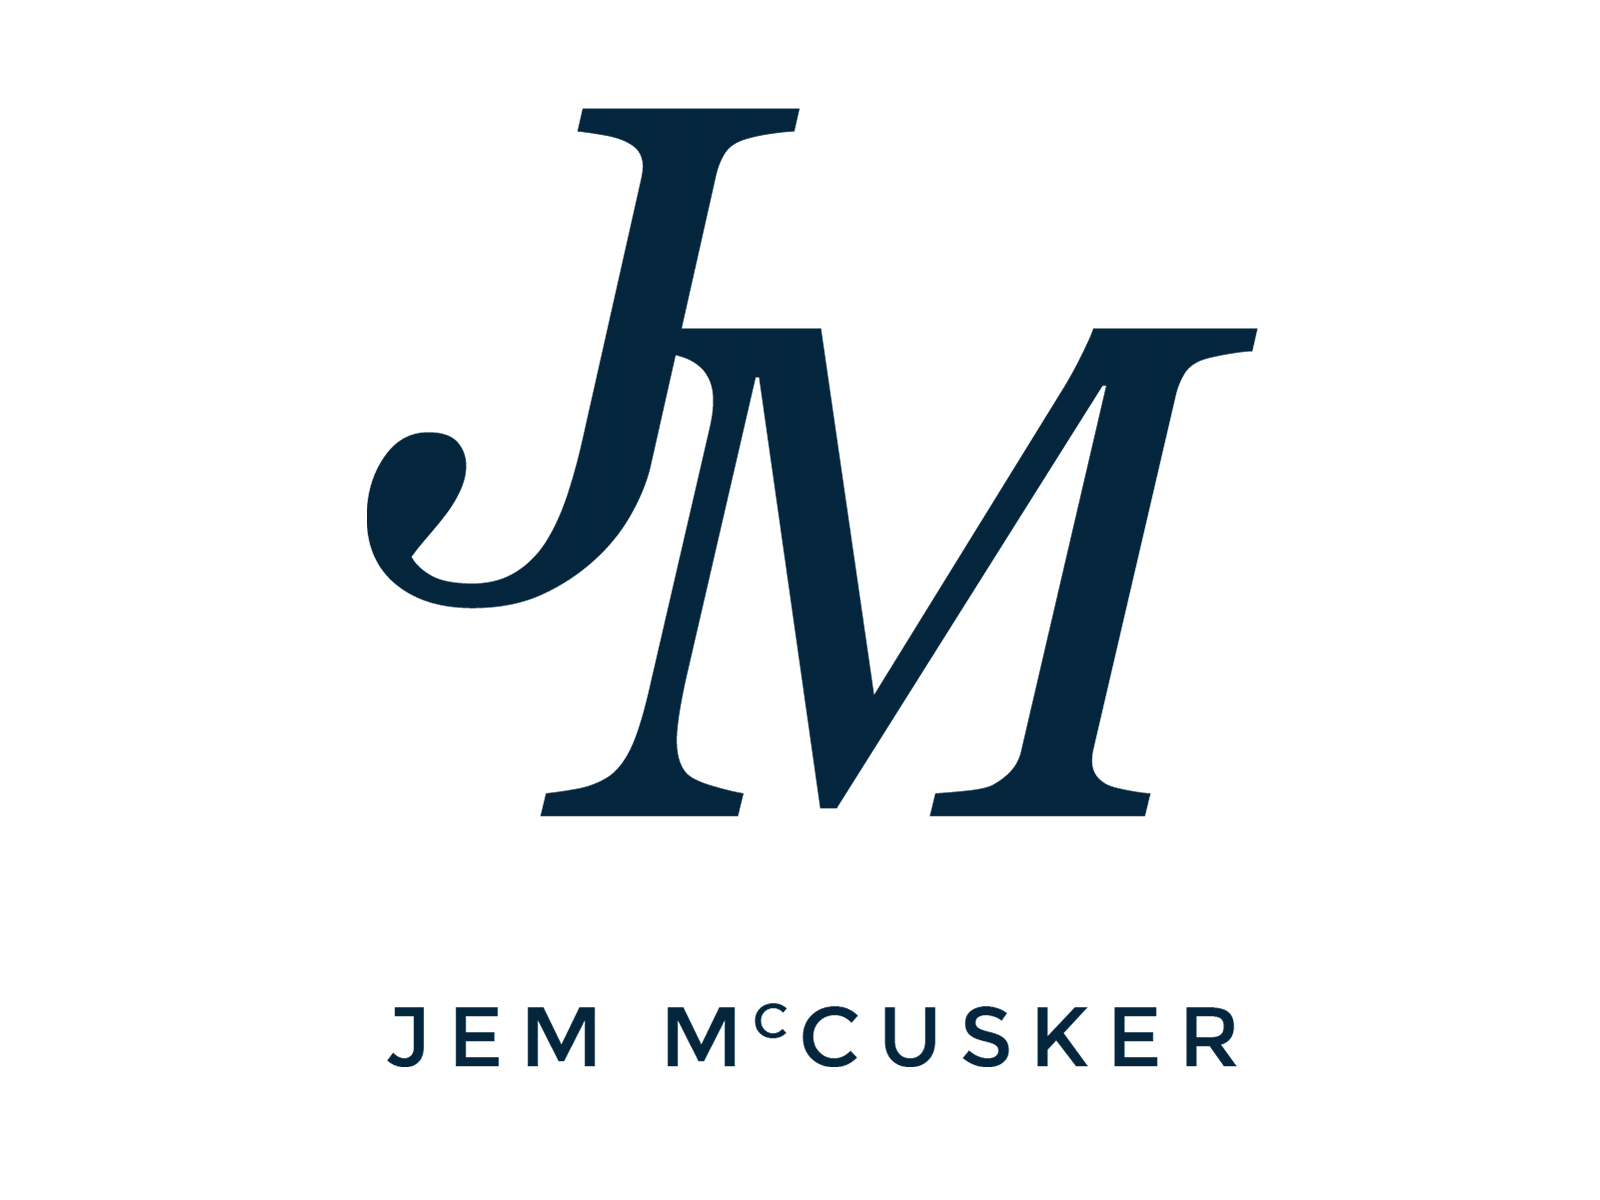 Jem McCusker Author Branding branding design logo typography